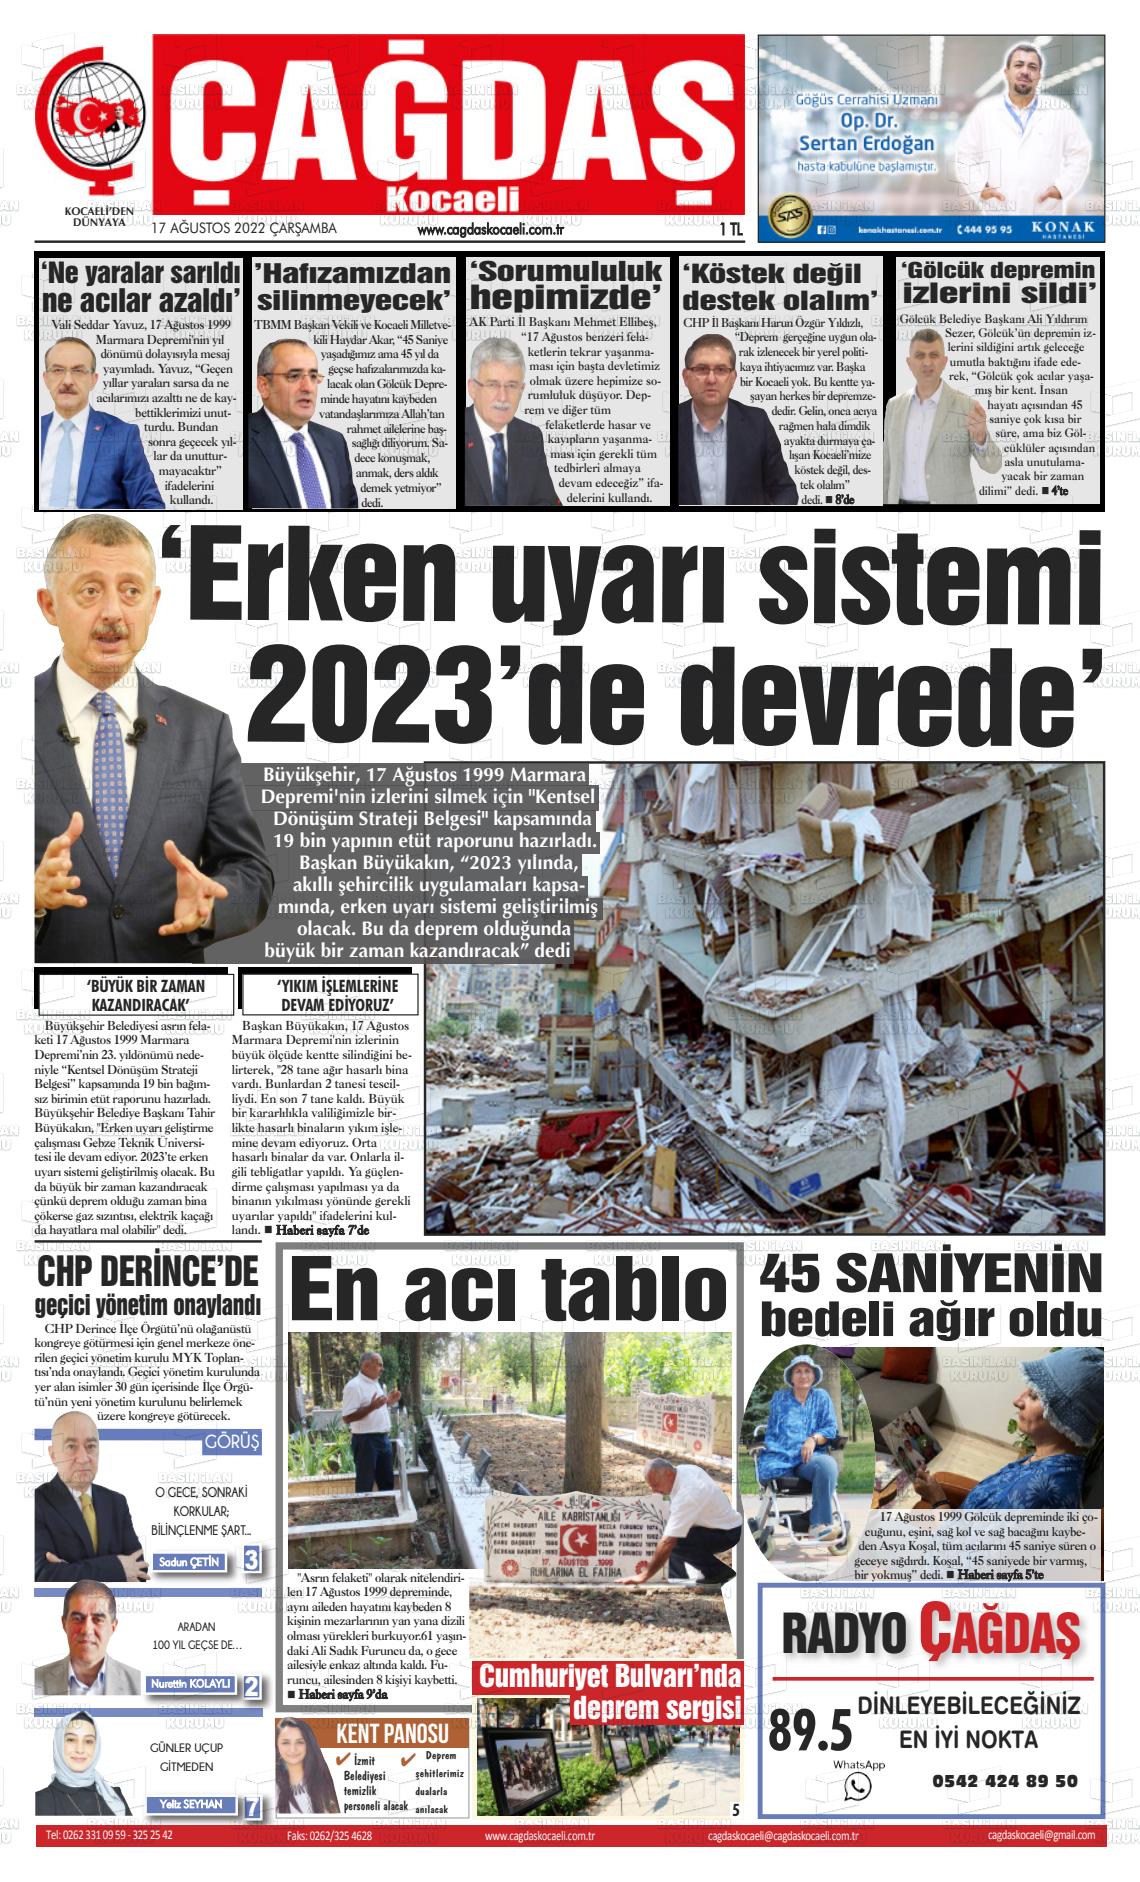 17 Ağustos 2022 Çağdaş Kocaeli Gazete Manşeti